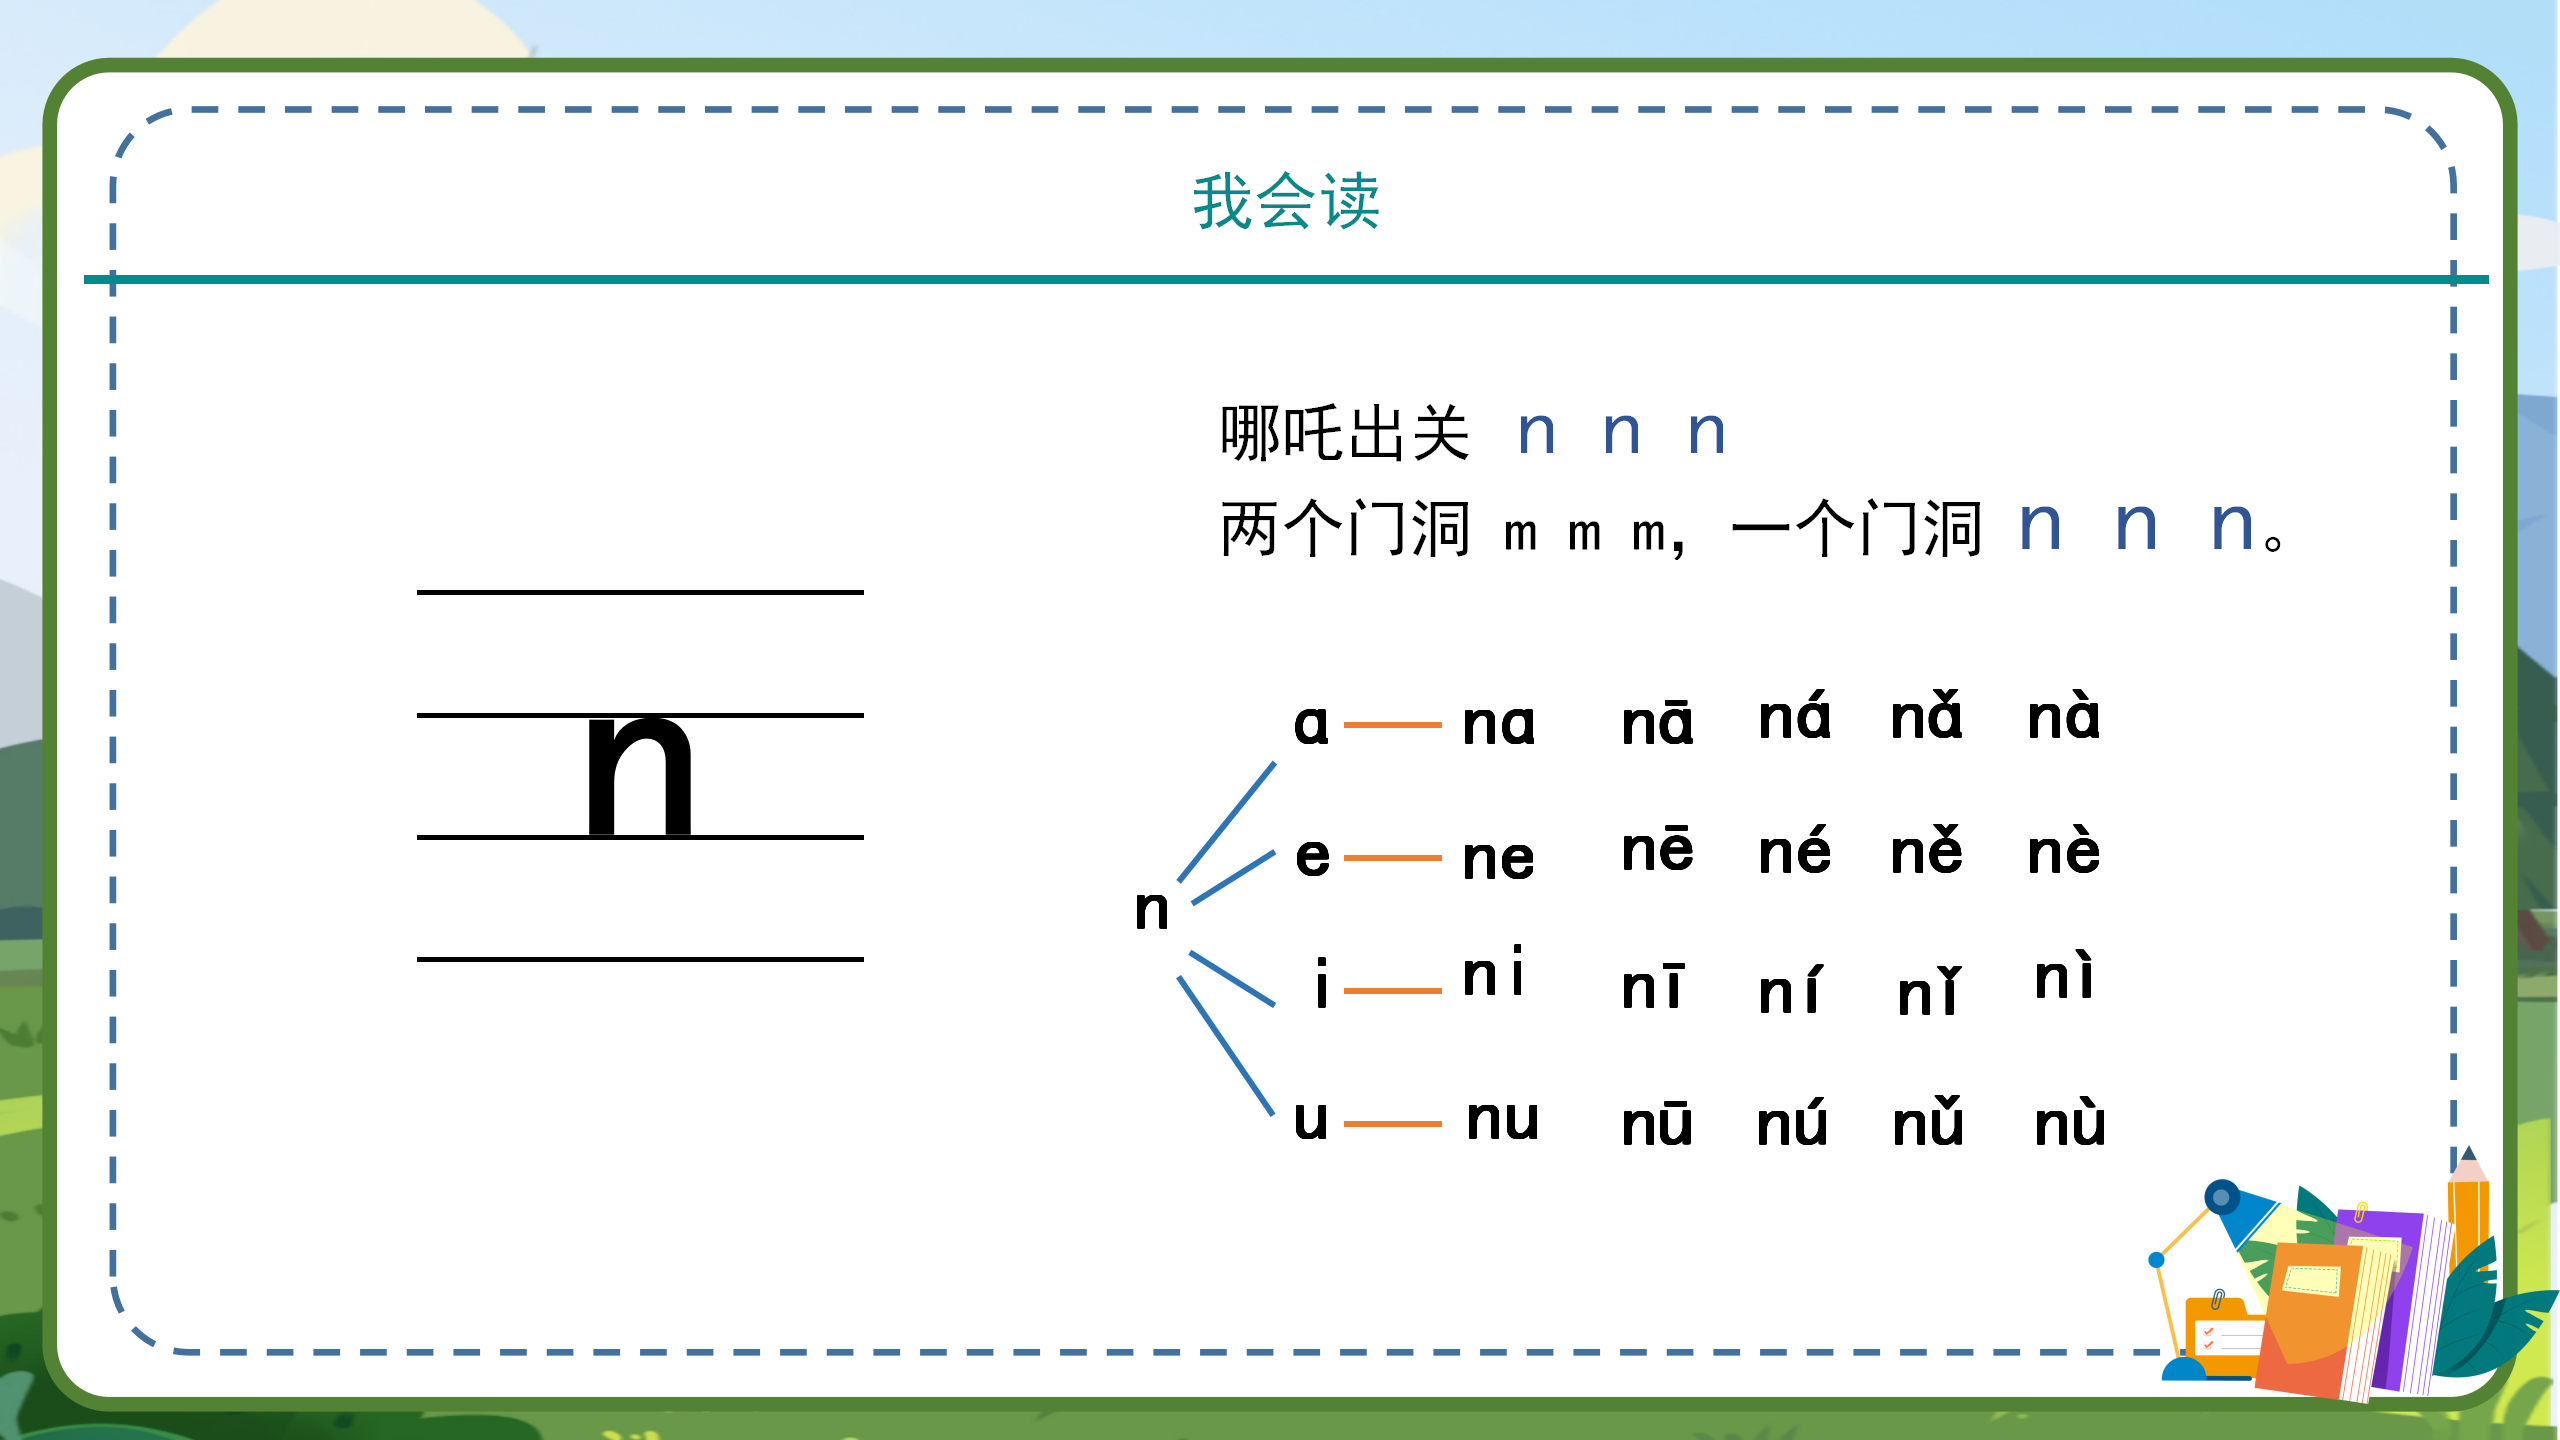 小学语文课件《dtnl》汉语拼音PPT模板